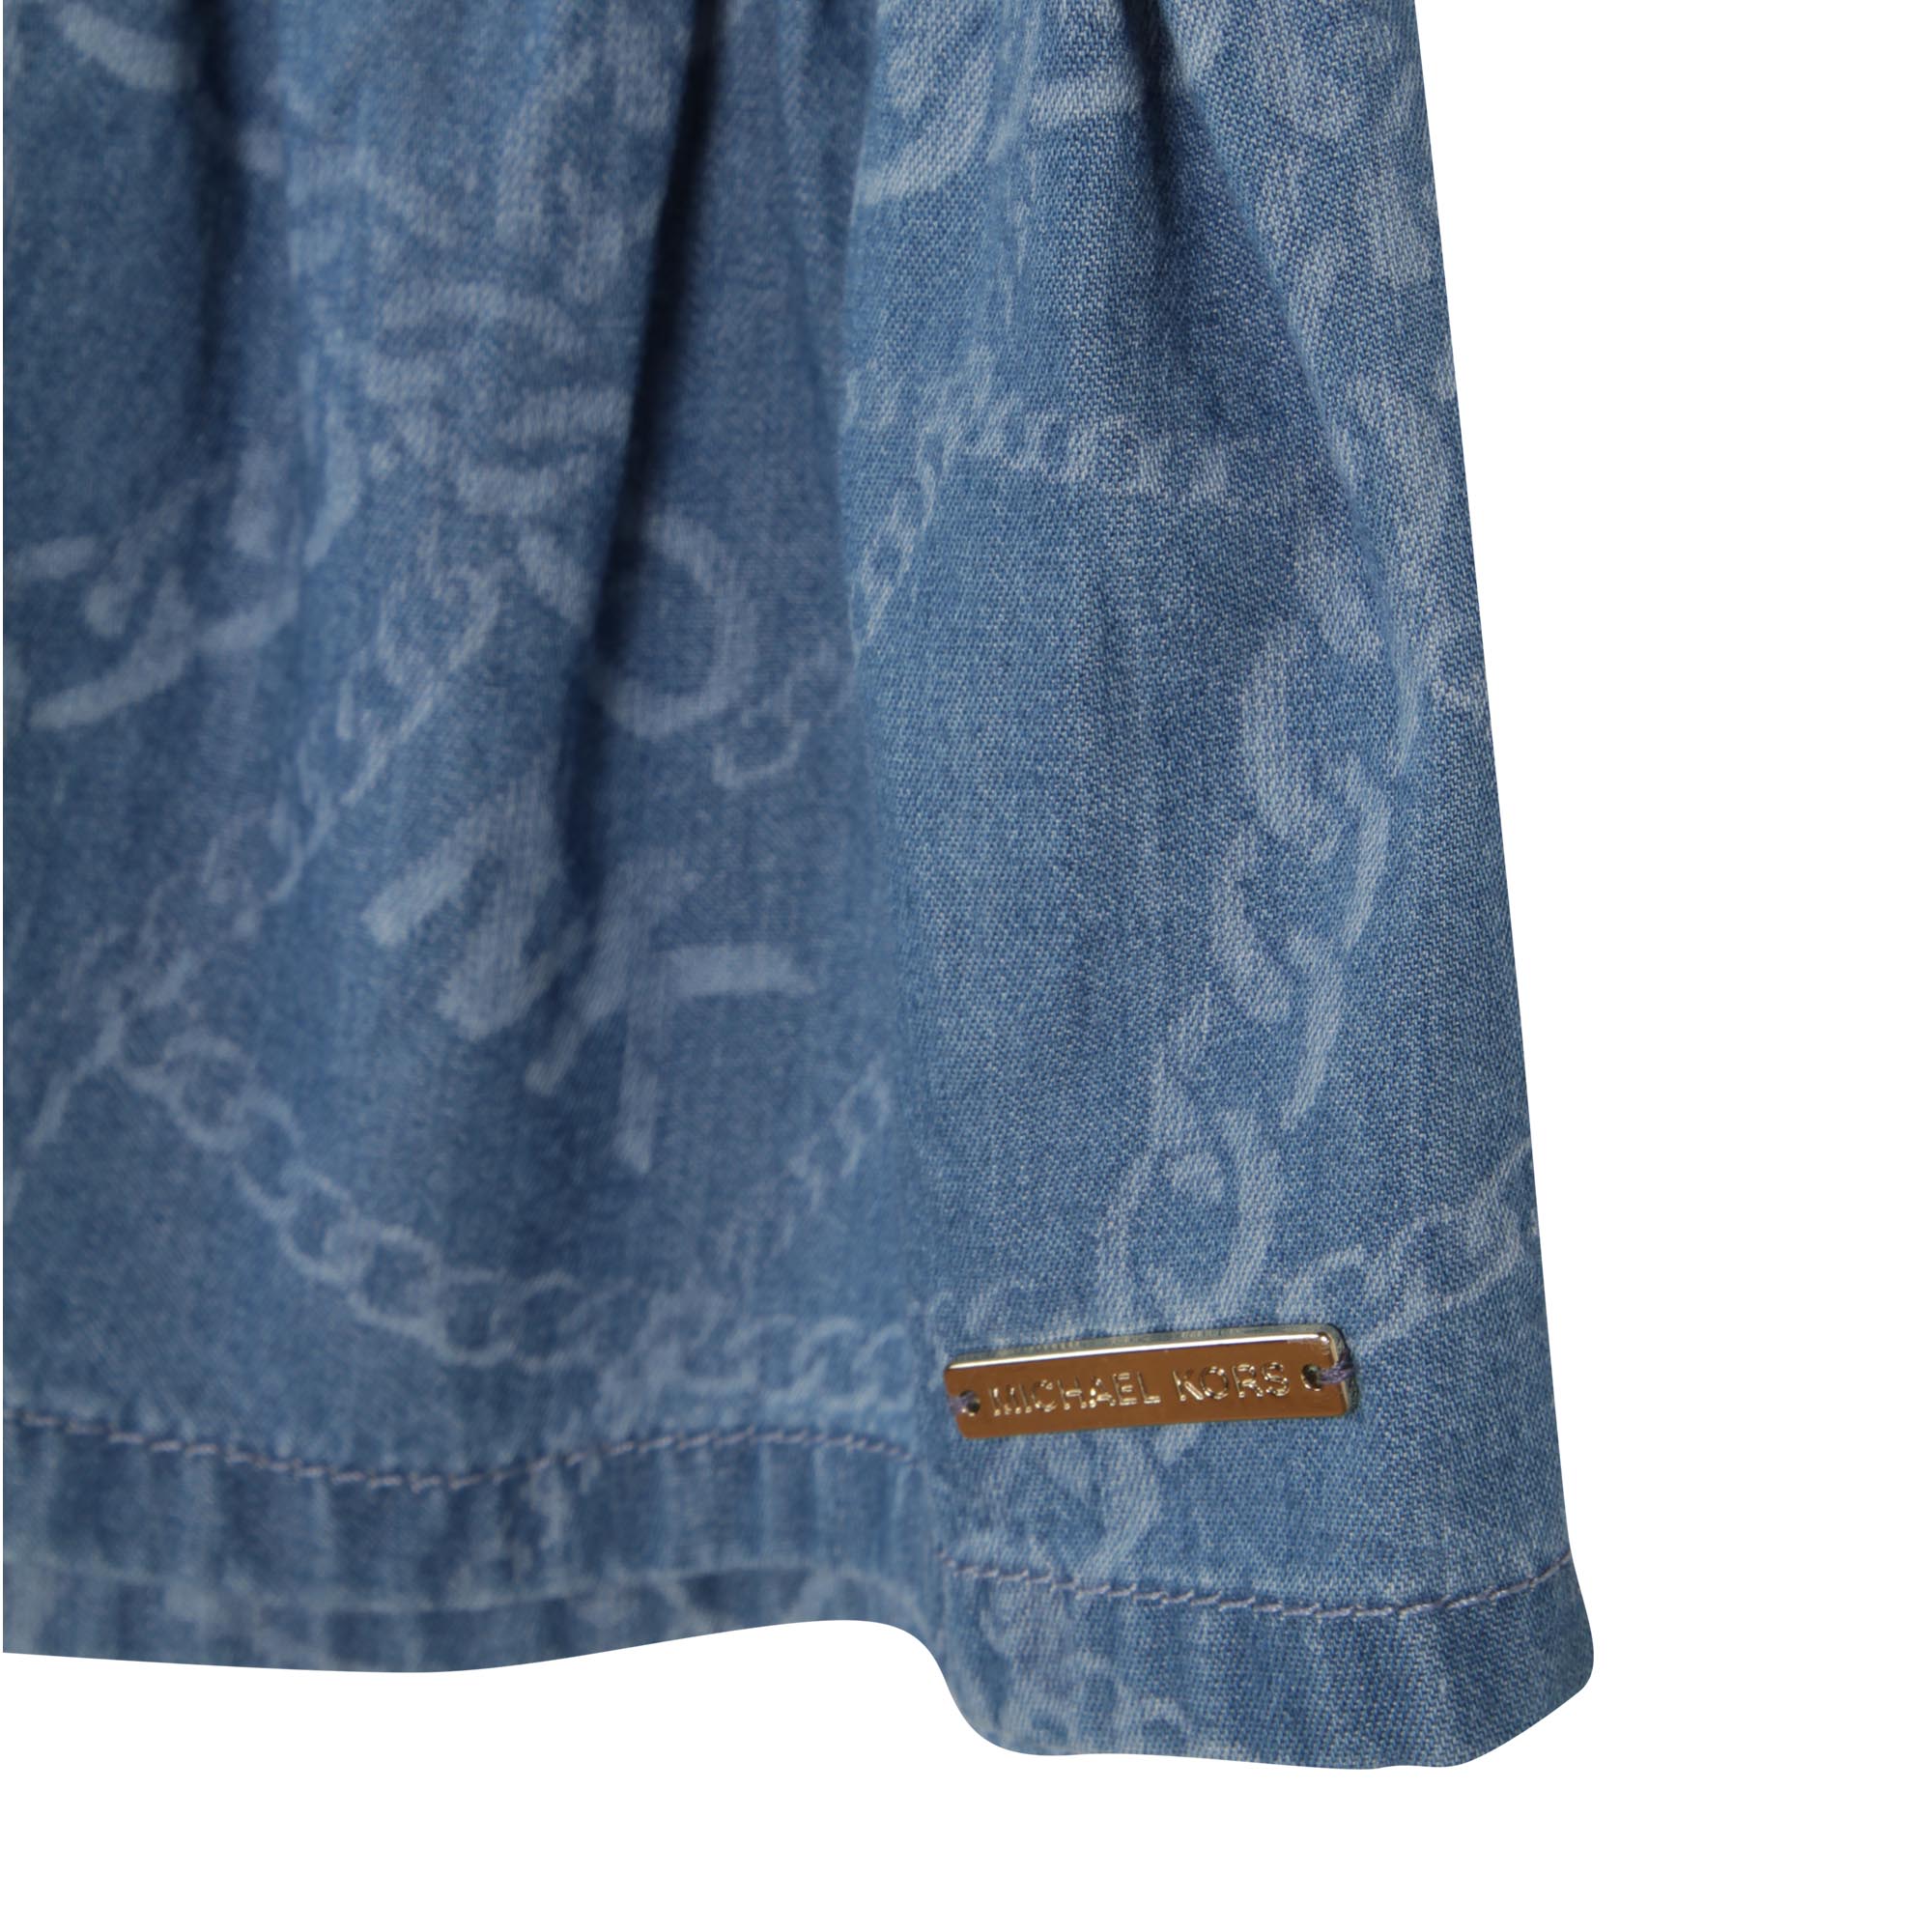 Frilled cotton skirt MICHAEL KORS for GIRL